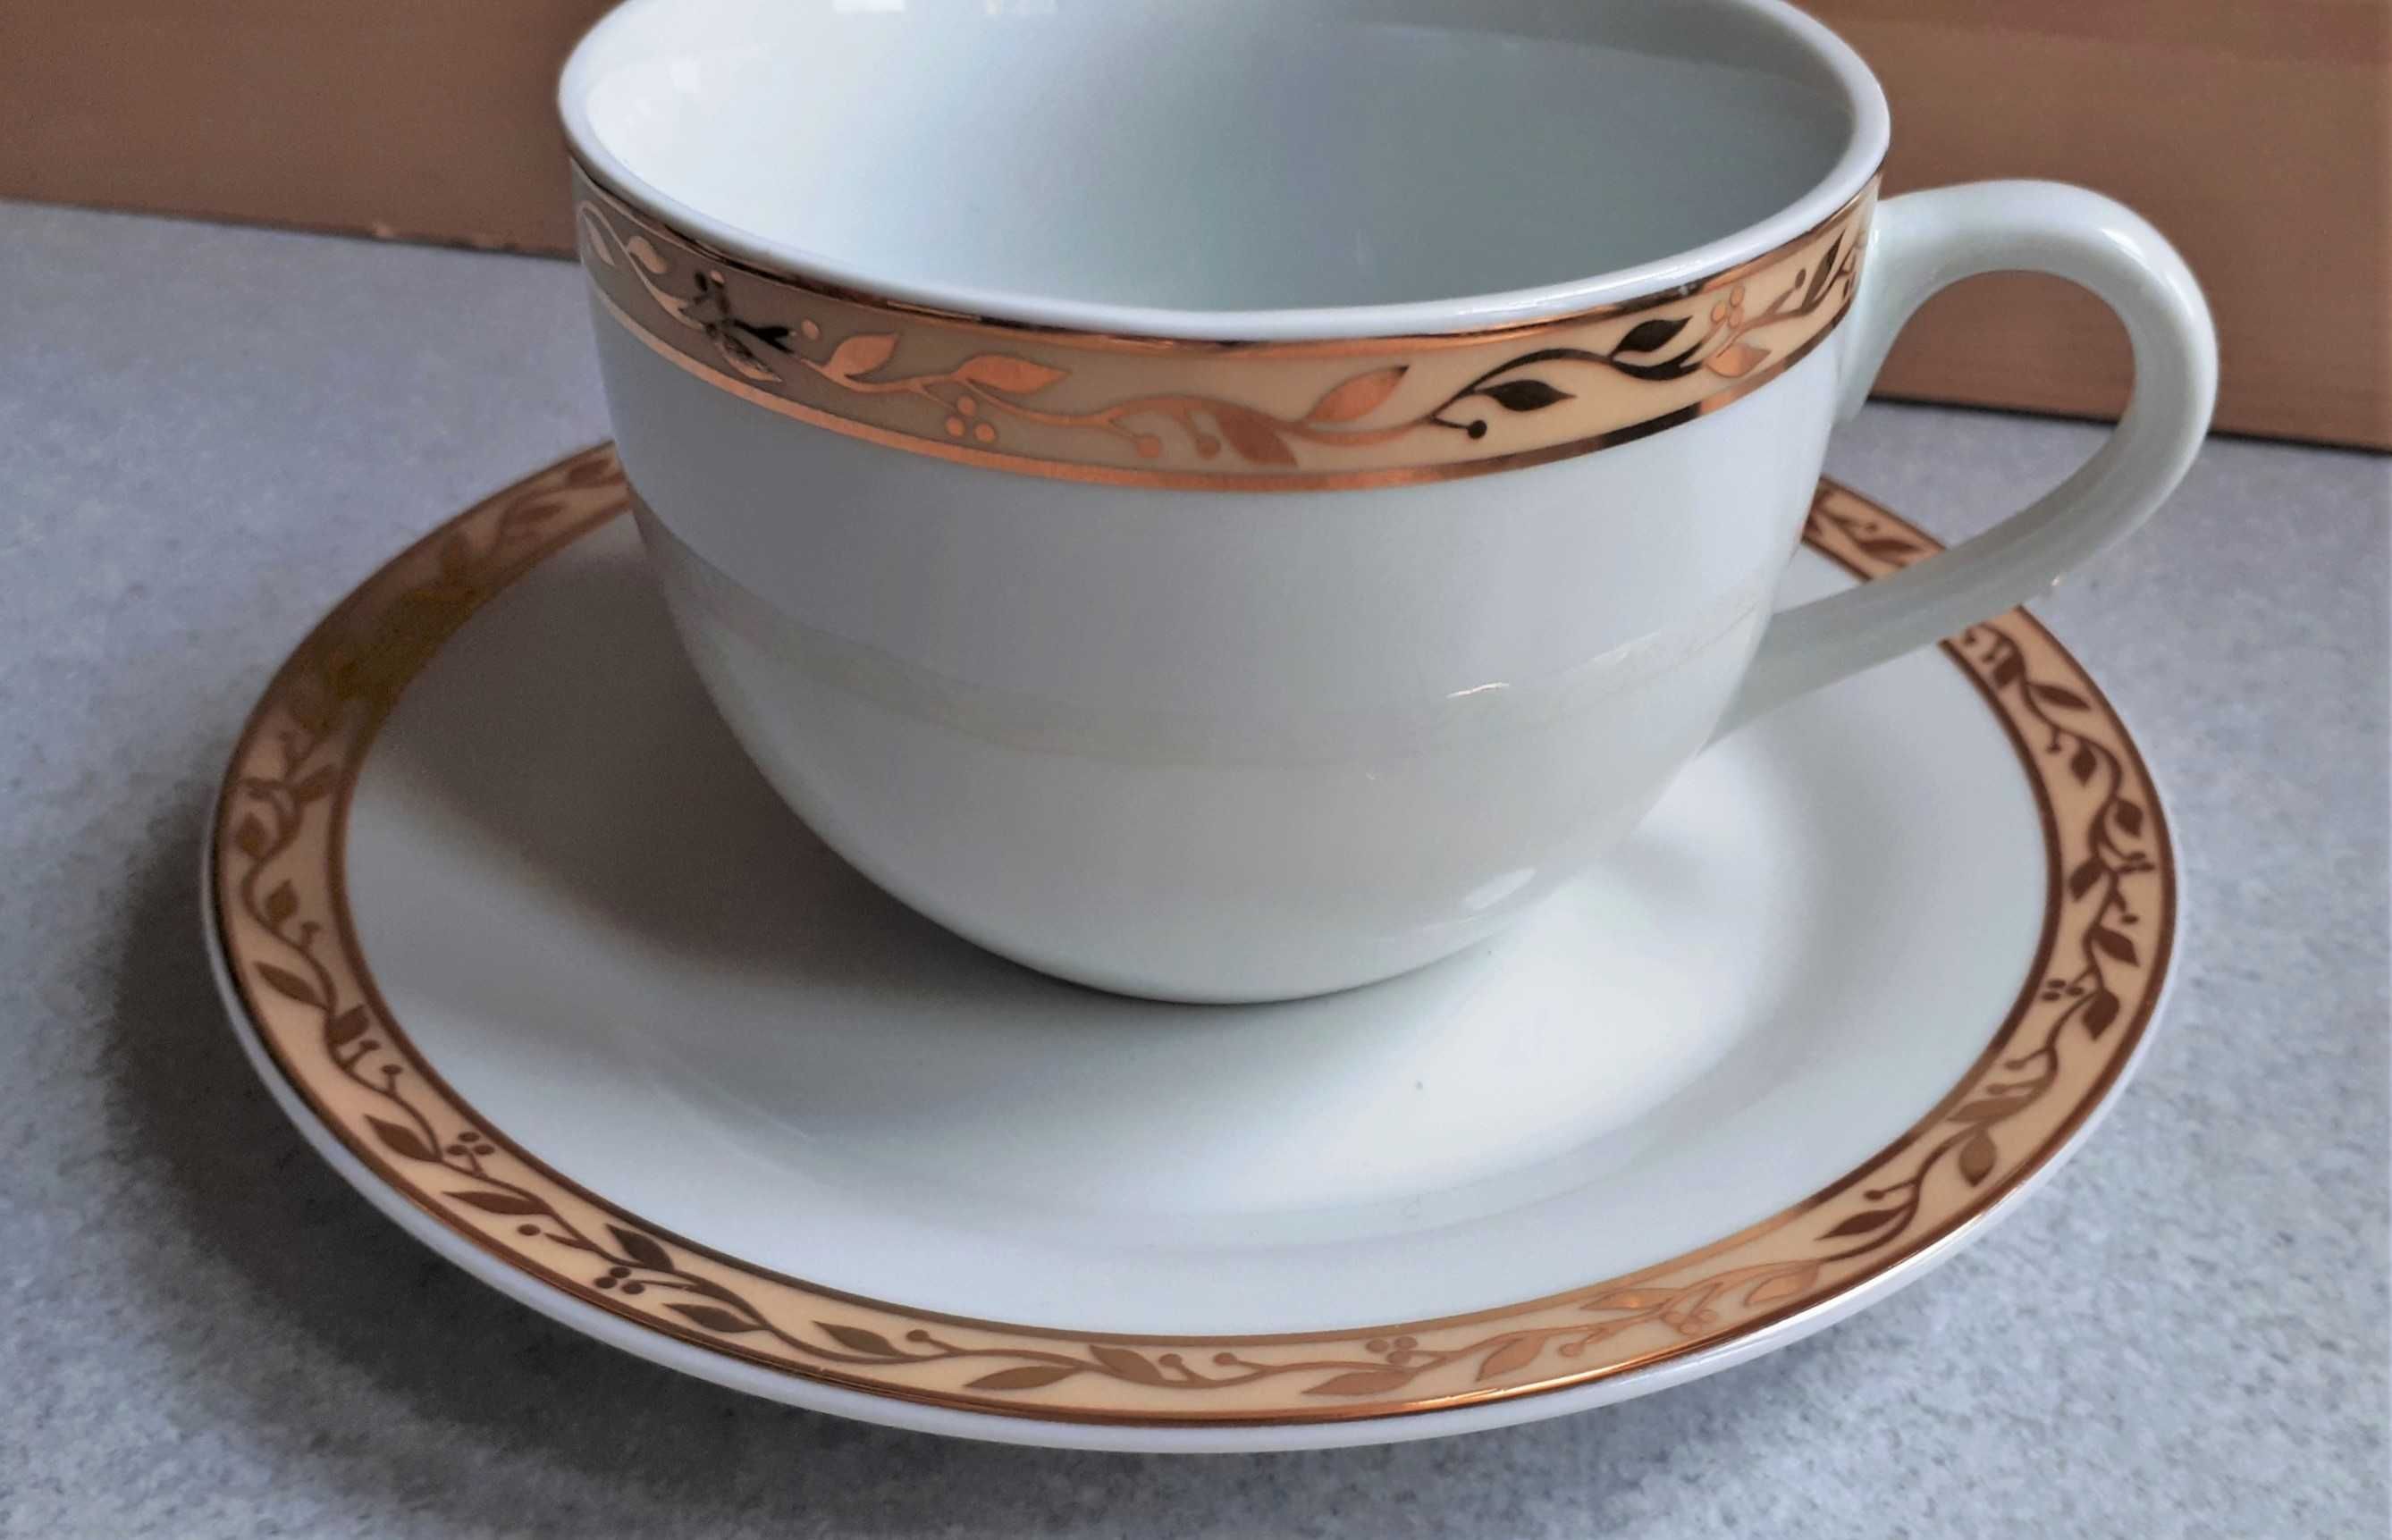 porcelana Dolce Vita komplet do kawy herbaty dwie filiżanki talerzyki